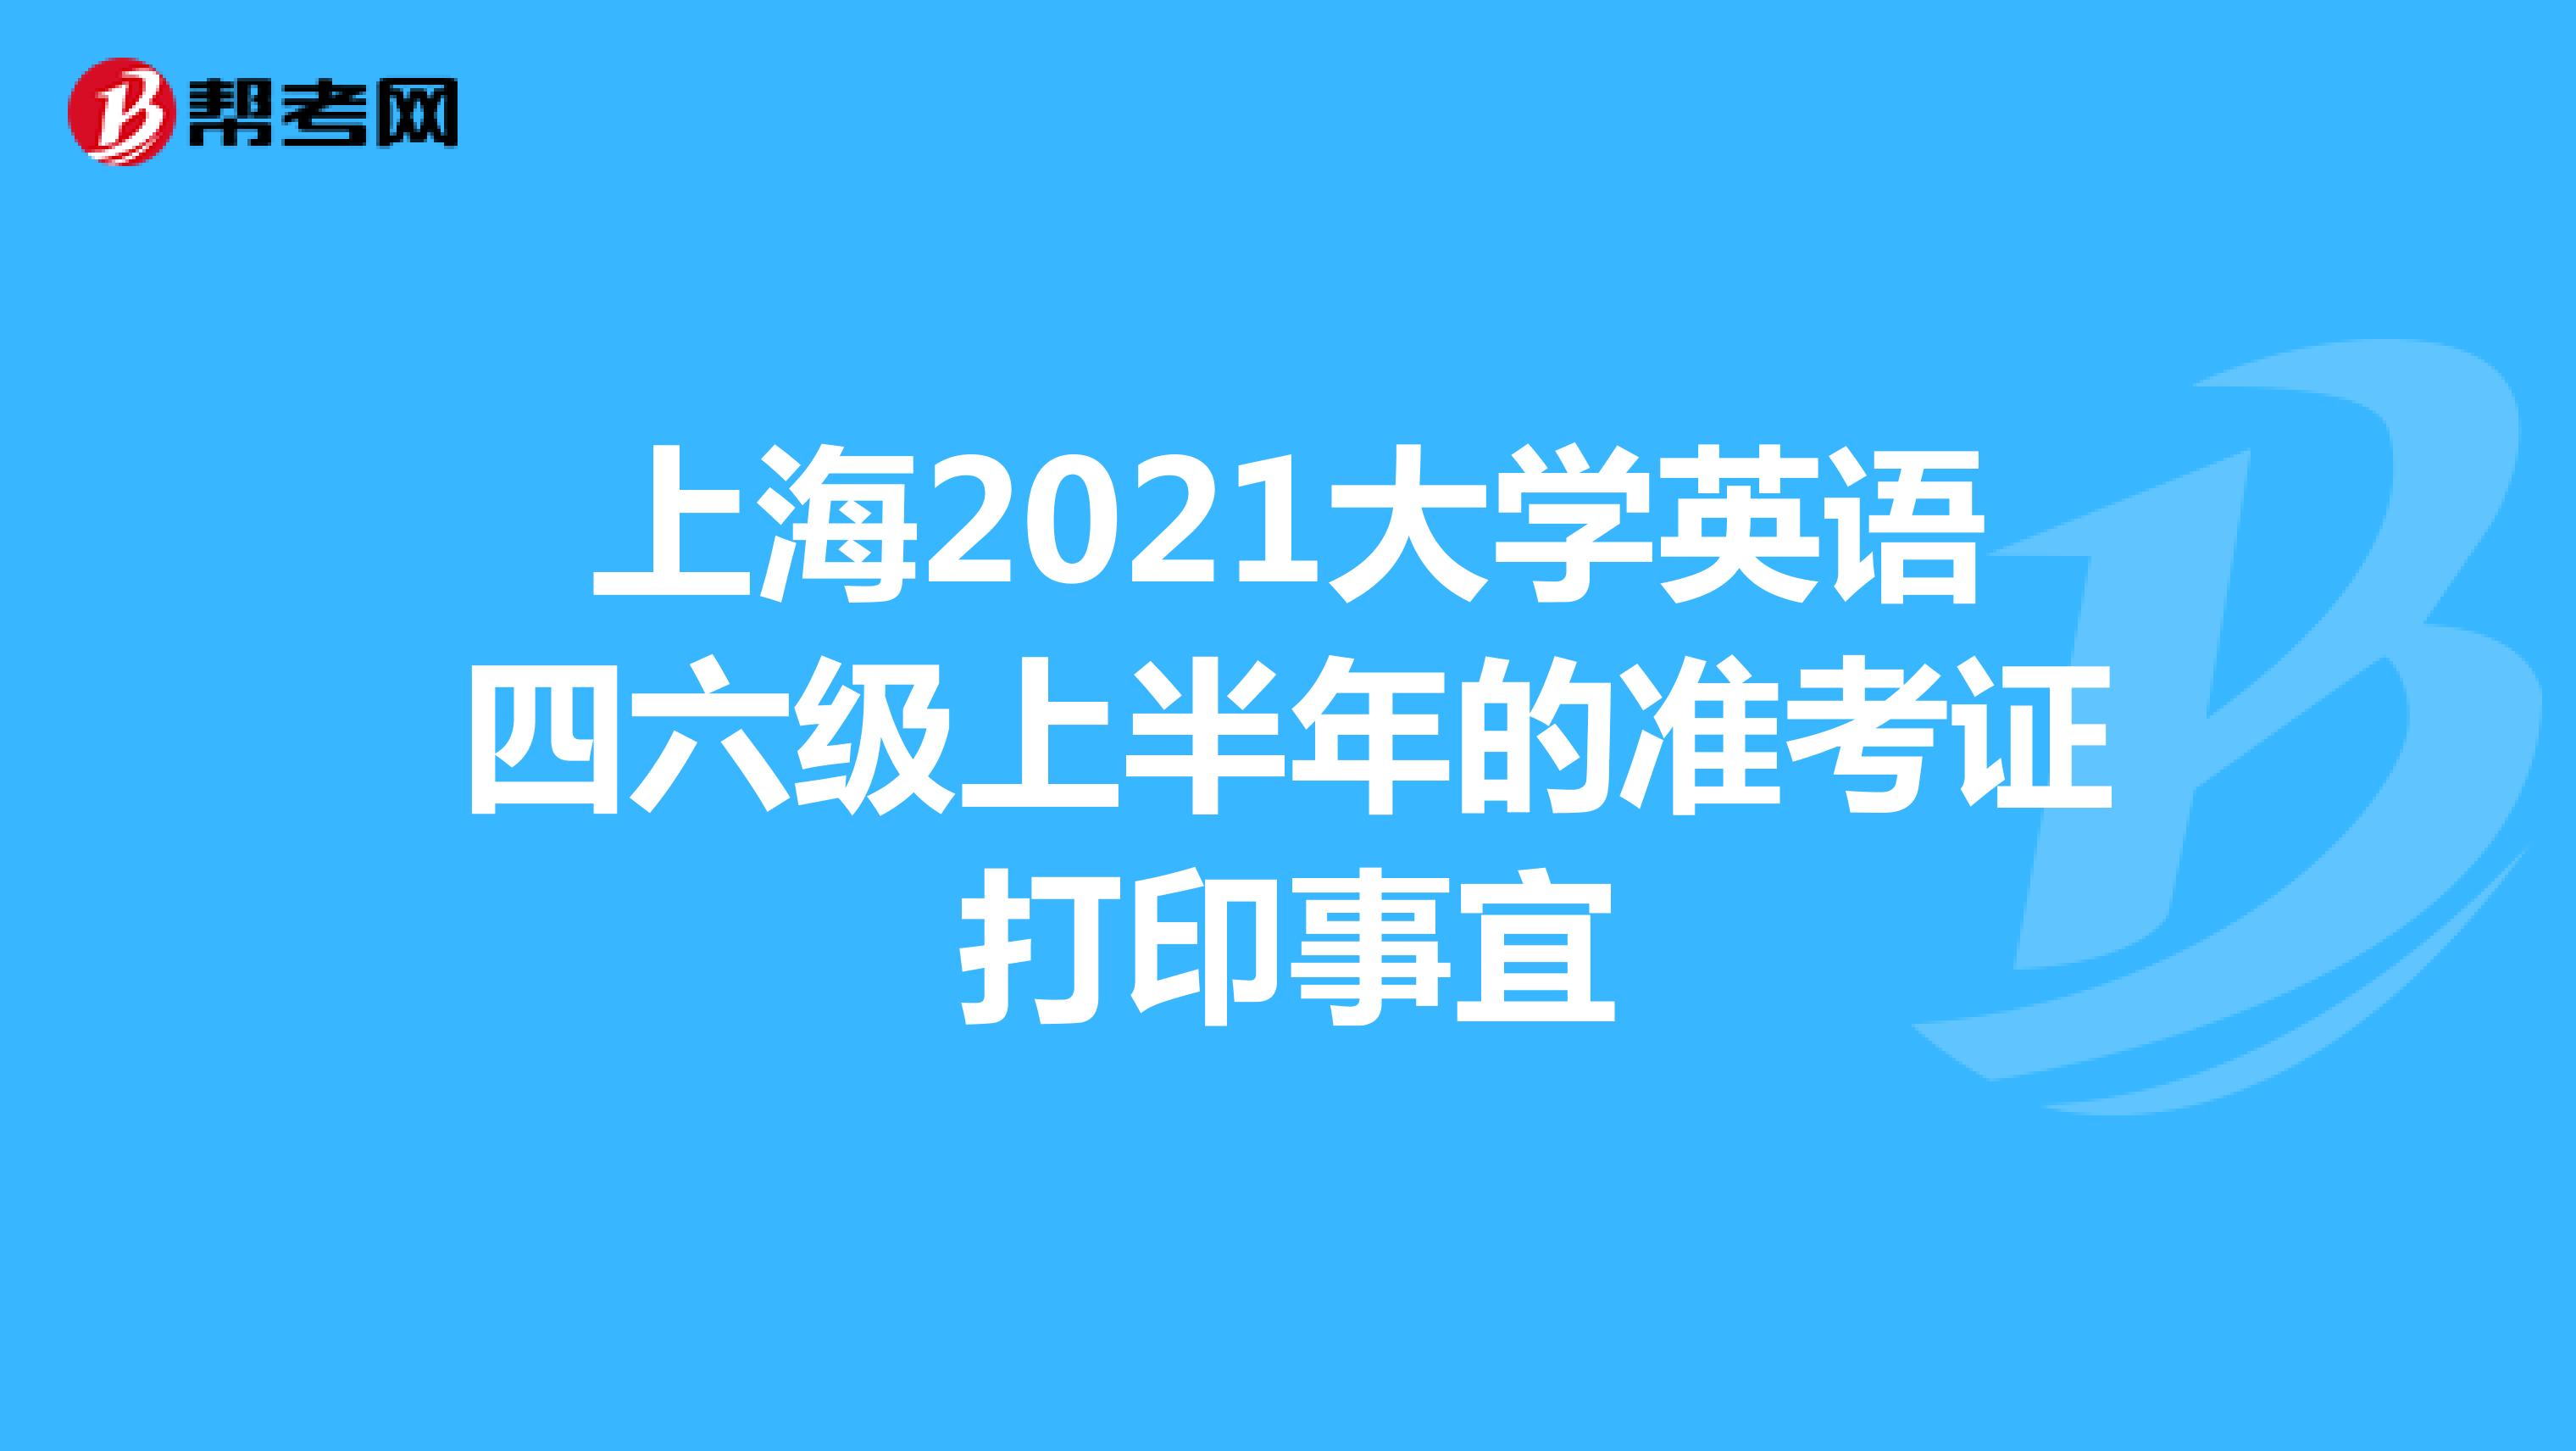 上海2021大学英语四六级上半年的准考证打印事宜